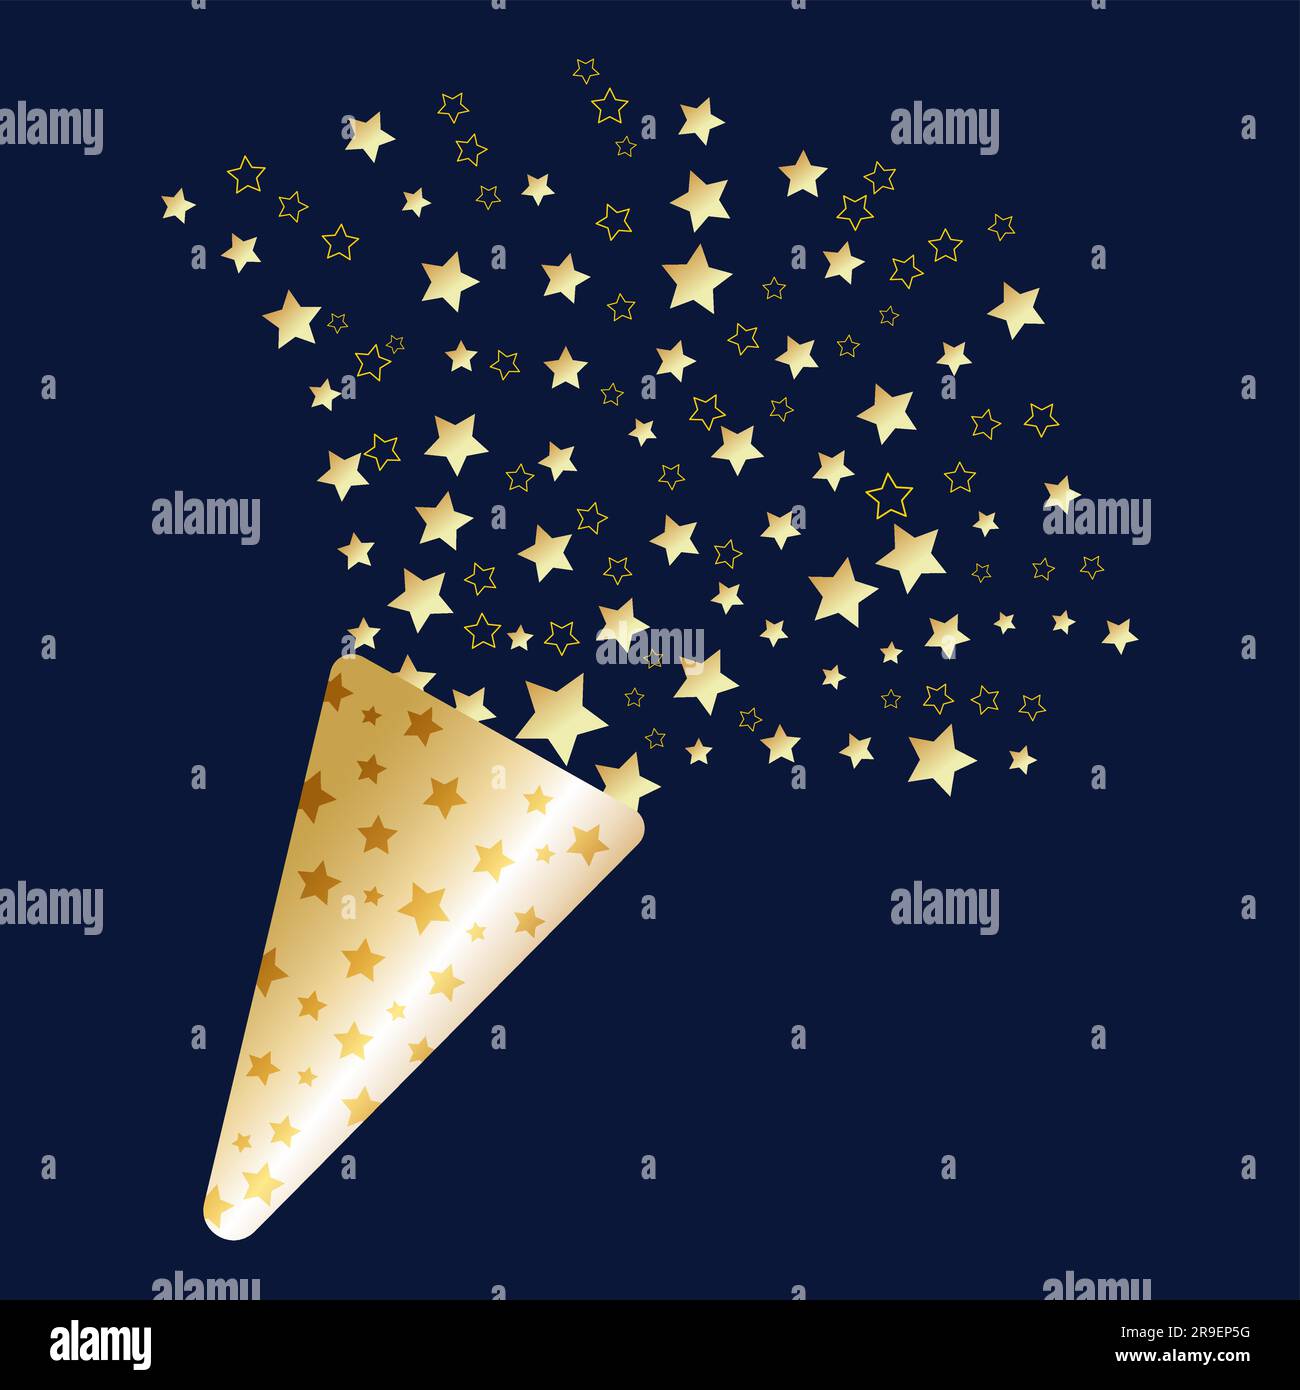 Golden Stars Feuerwerk und Girlande Party Hintergrund Feiertage Gratulation  Banner Design. Vektordarstellung isoliert auf dunklem Hintergrund  Stock-Vektorgrafik - Alamy